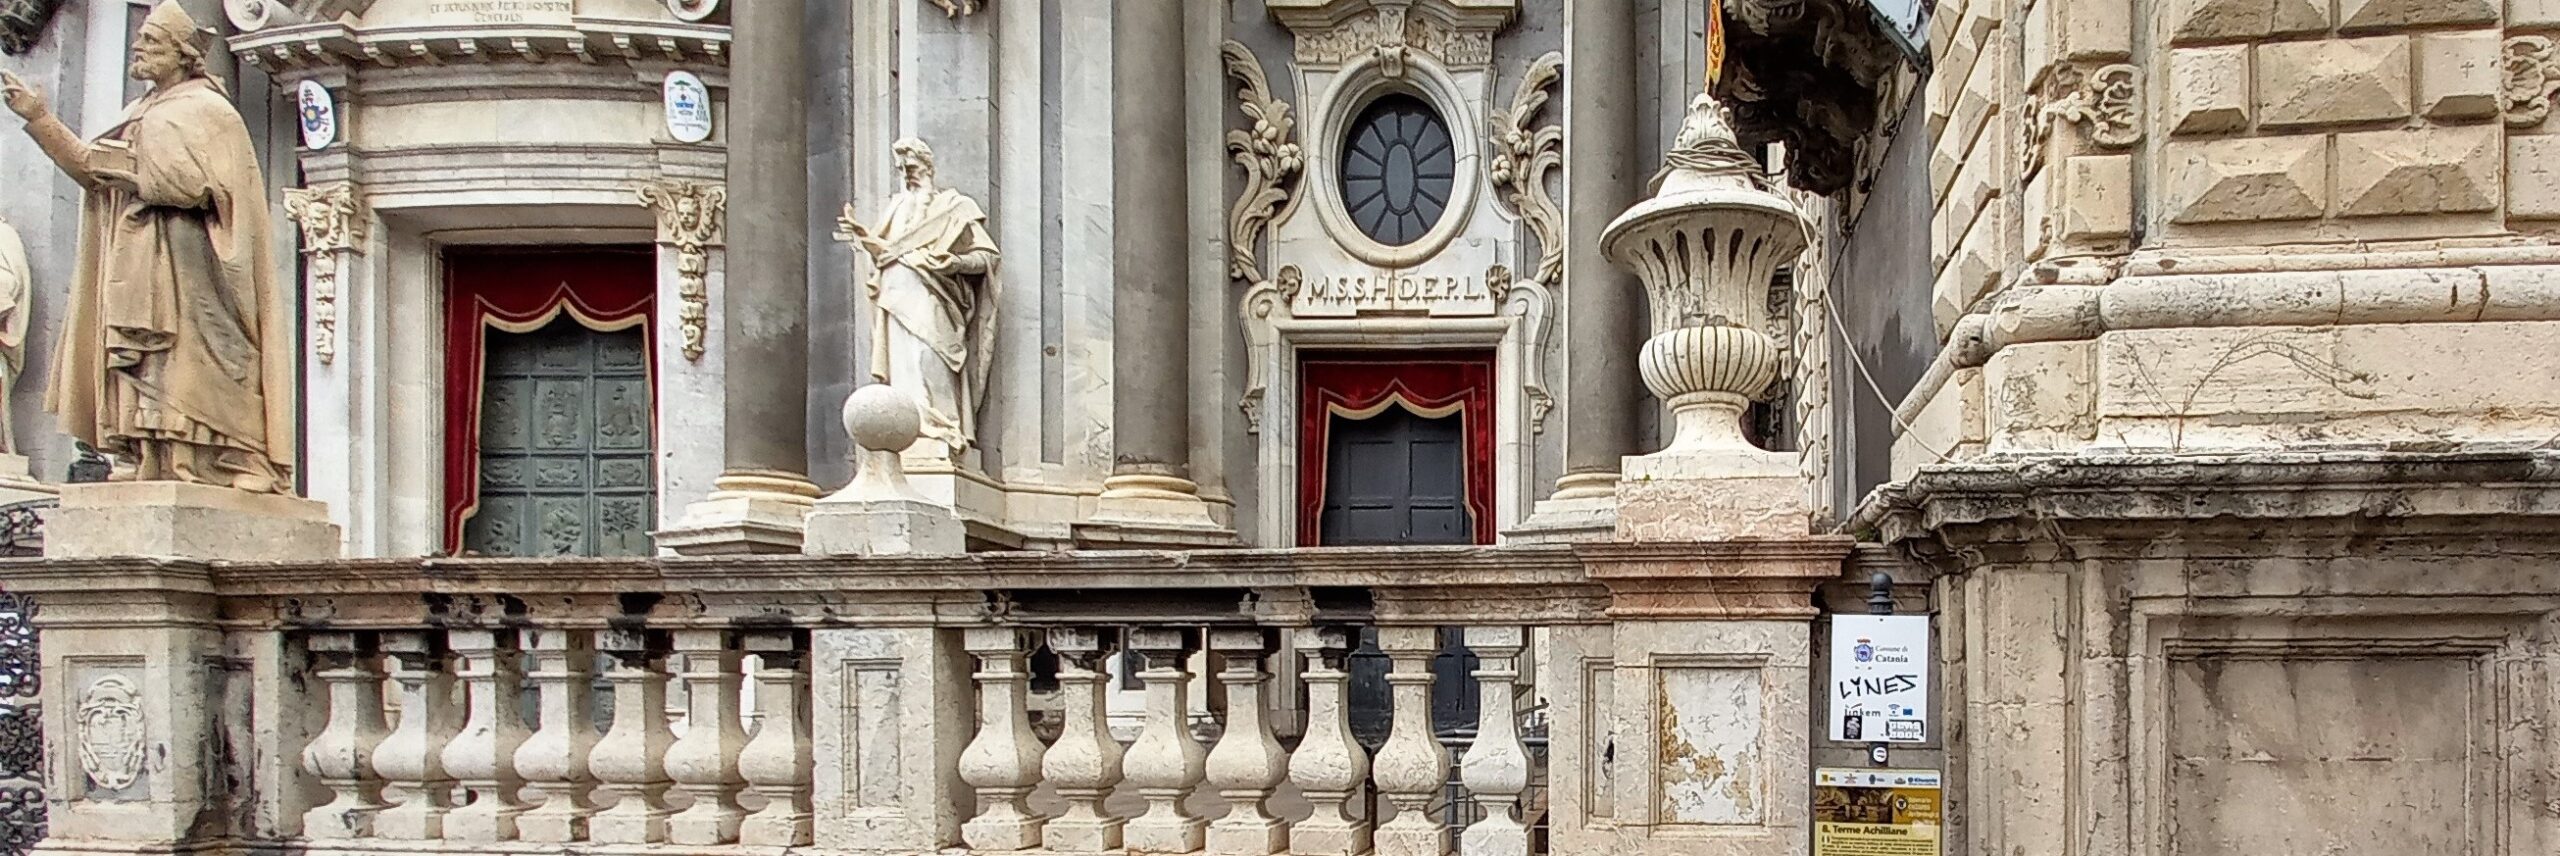 Cattedrale di San.Agata, la Santa Fanciulla. Racconto di una Santa Famiglia Patrizia in Sicilia Catania Visionaria (3)